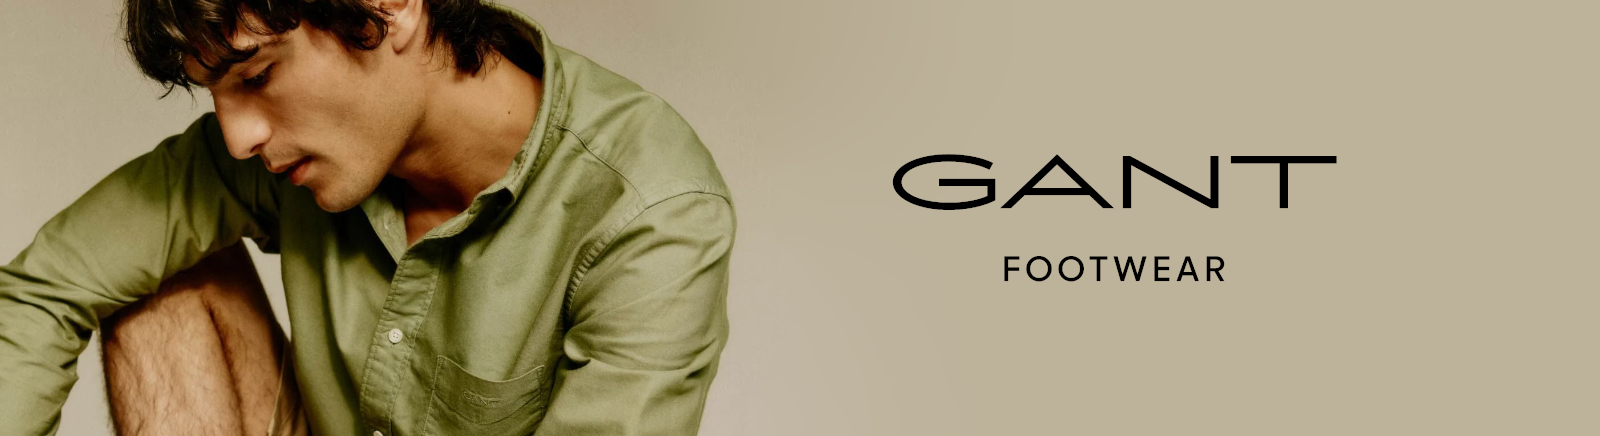 Prange: Gant Boots für Damen online kaufen online shoppen